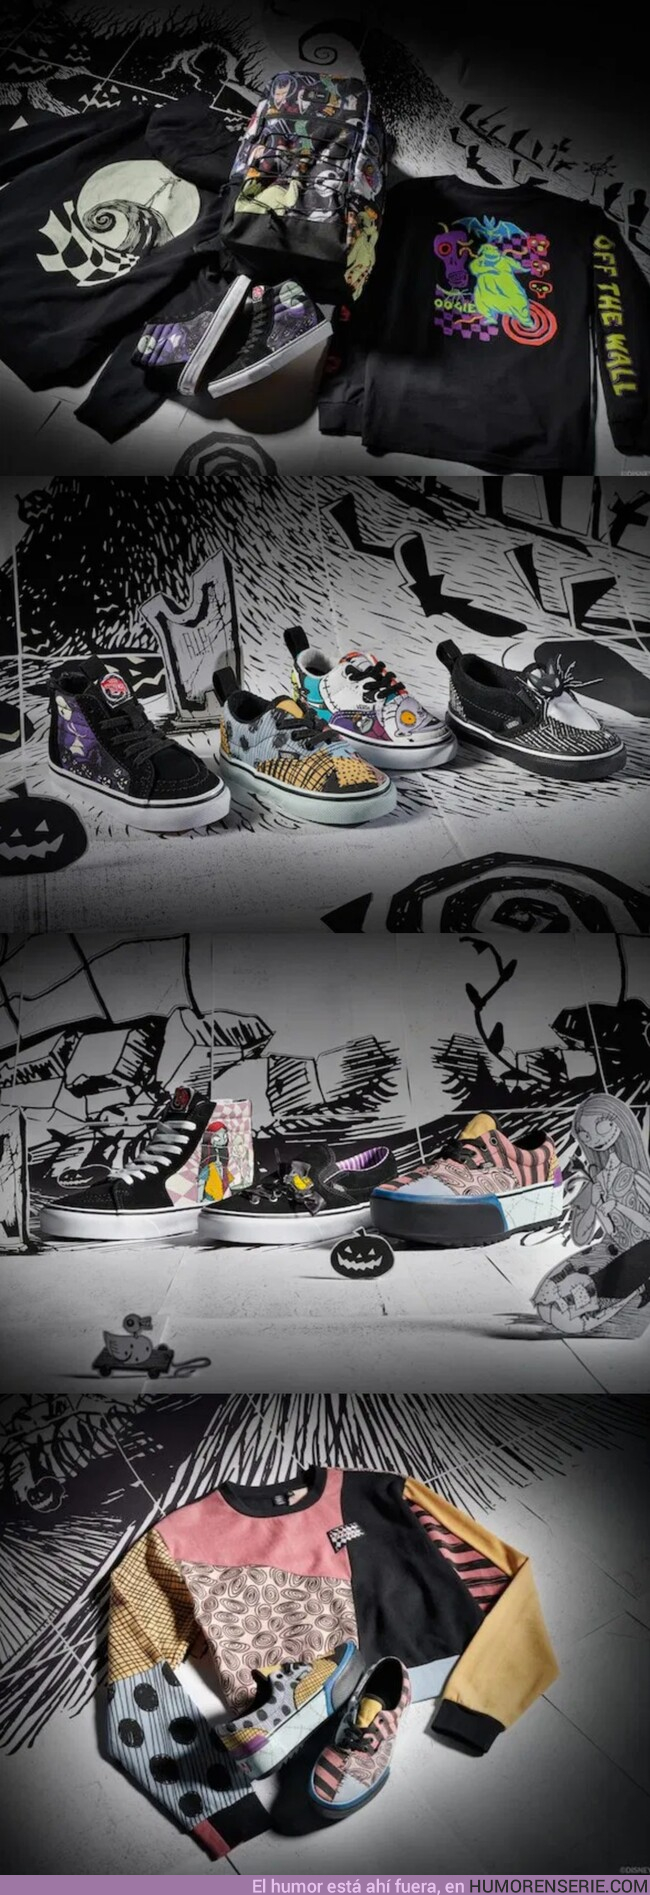 42598 - Vans anuncia una nueva línea de zapatillas inspiradas en 'Pesadilla antes de Navidad'